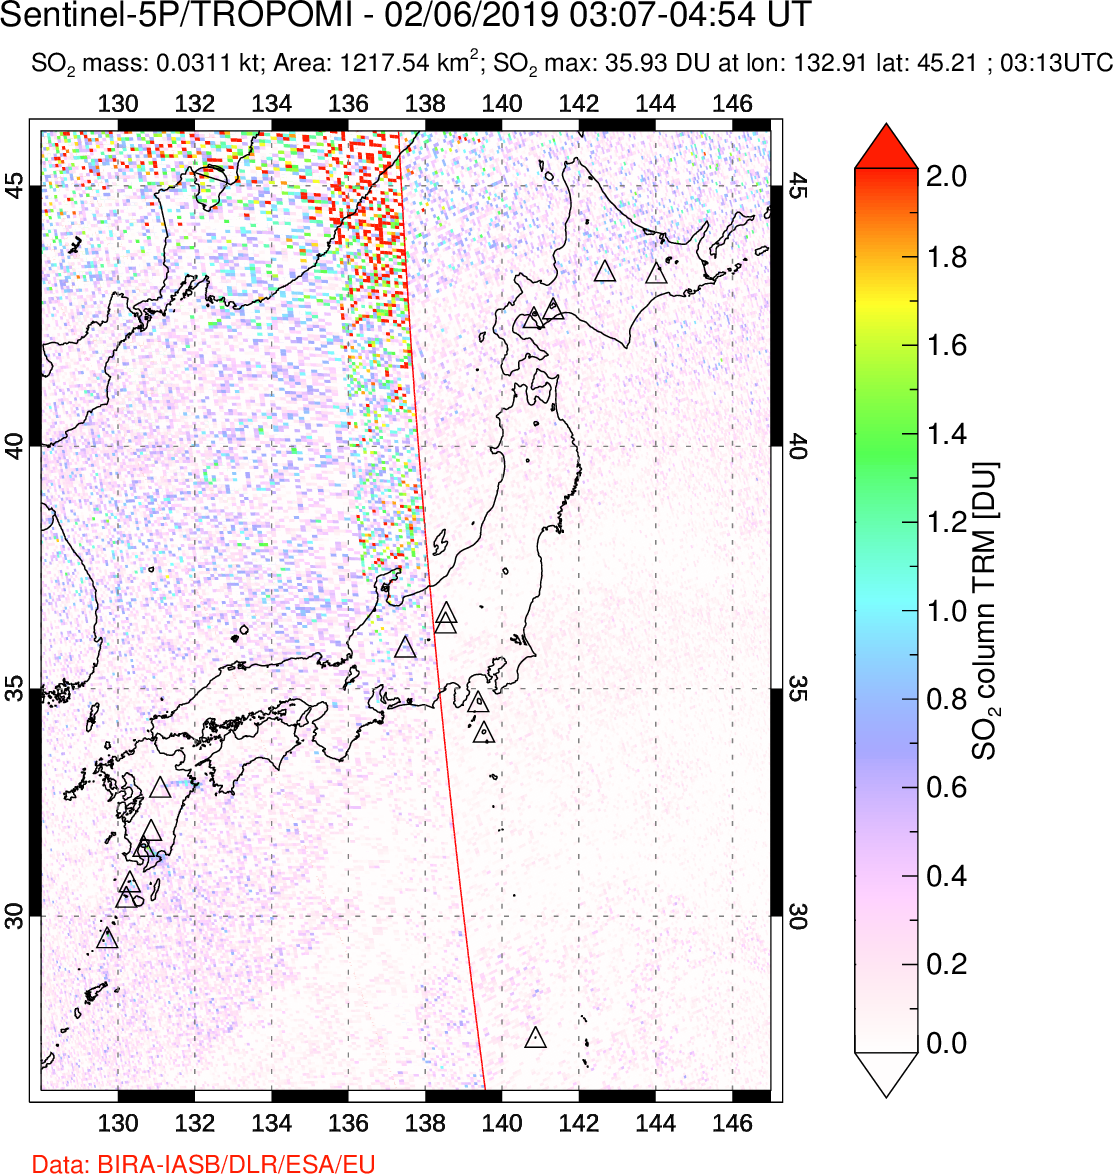 A sulfur dioxide image over Japan on Feb 06, 2019.